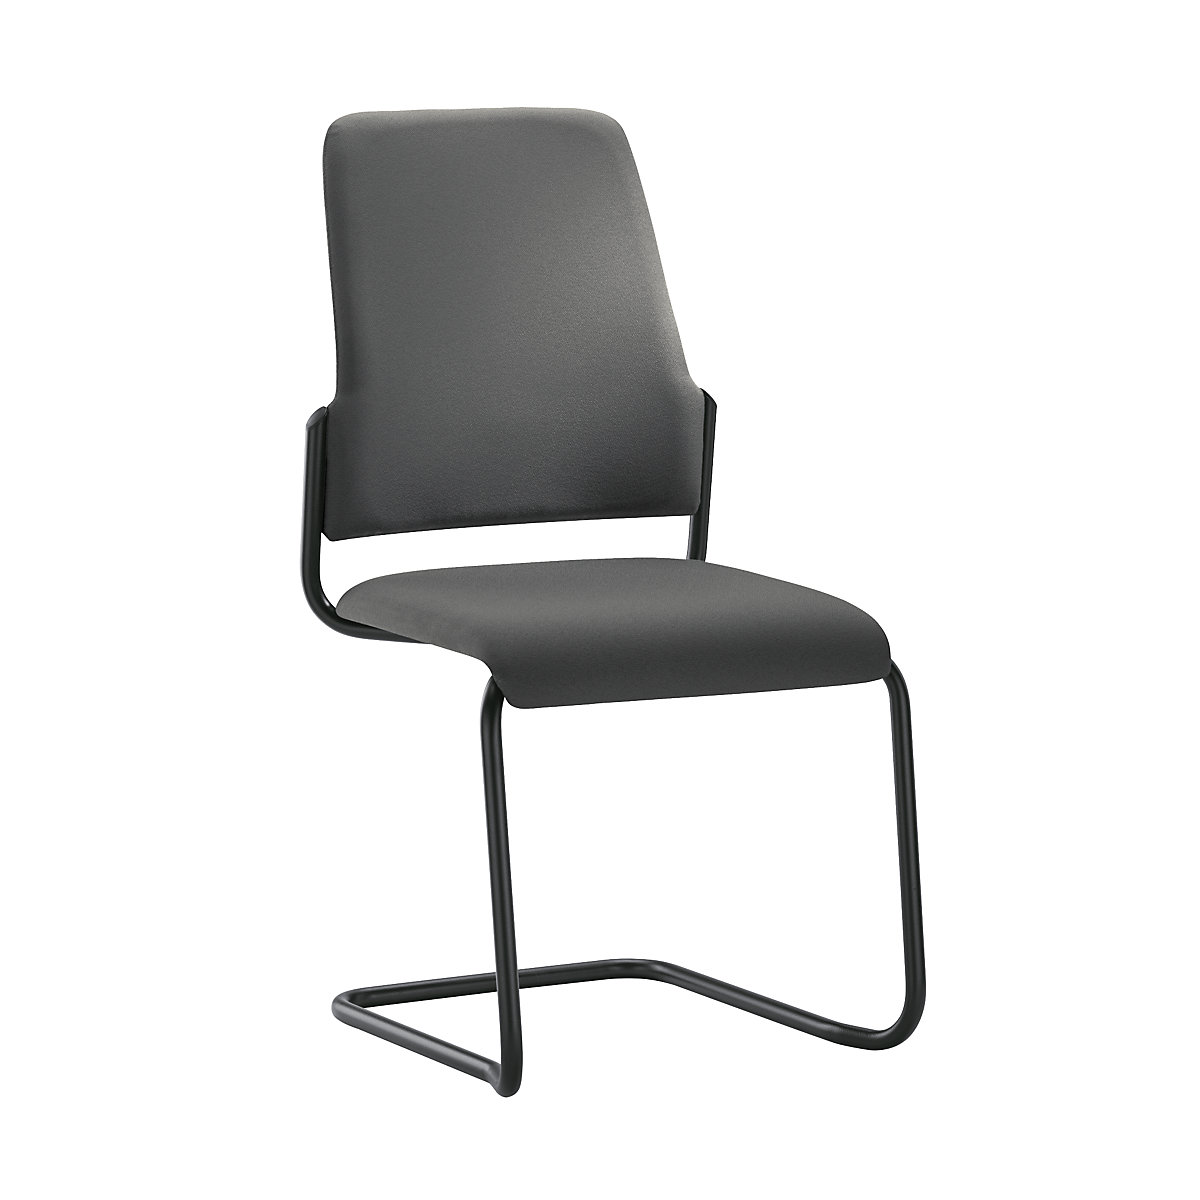 Bezoekersstoel GOAL, sledestoel, VE = 2 stuks – interstuhl, stoelframe zwart, ijzergrijs-7